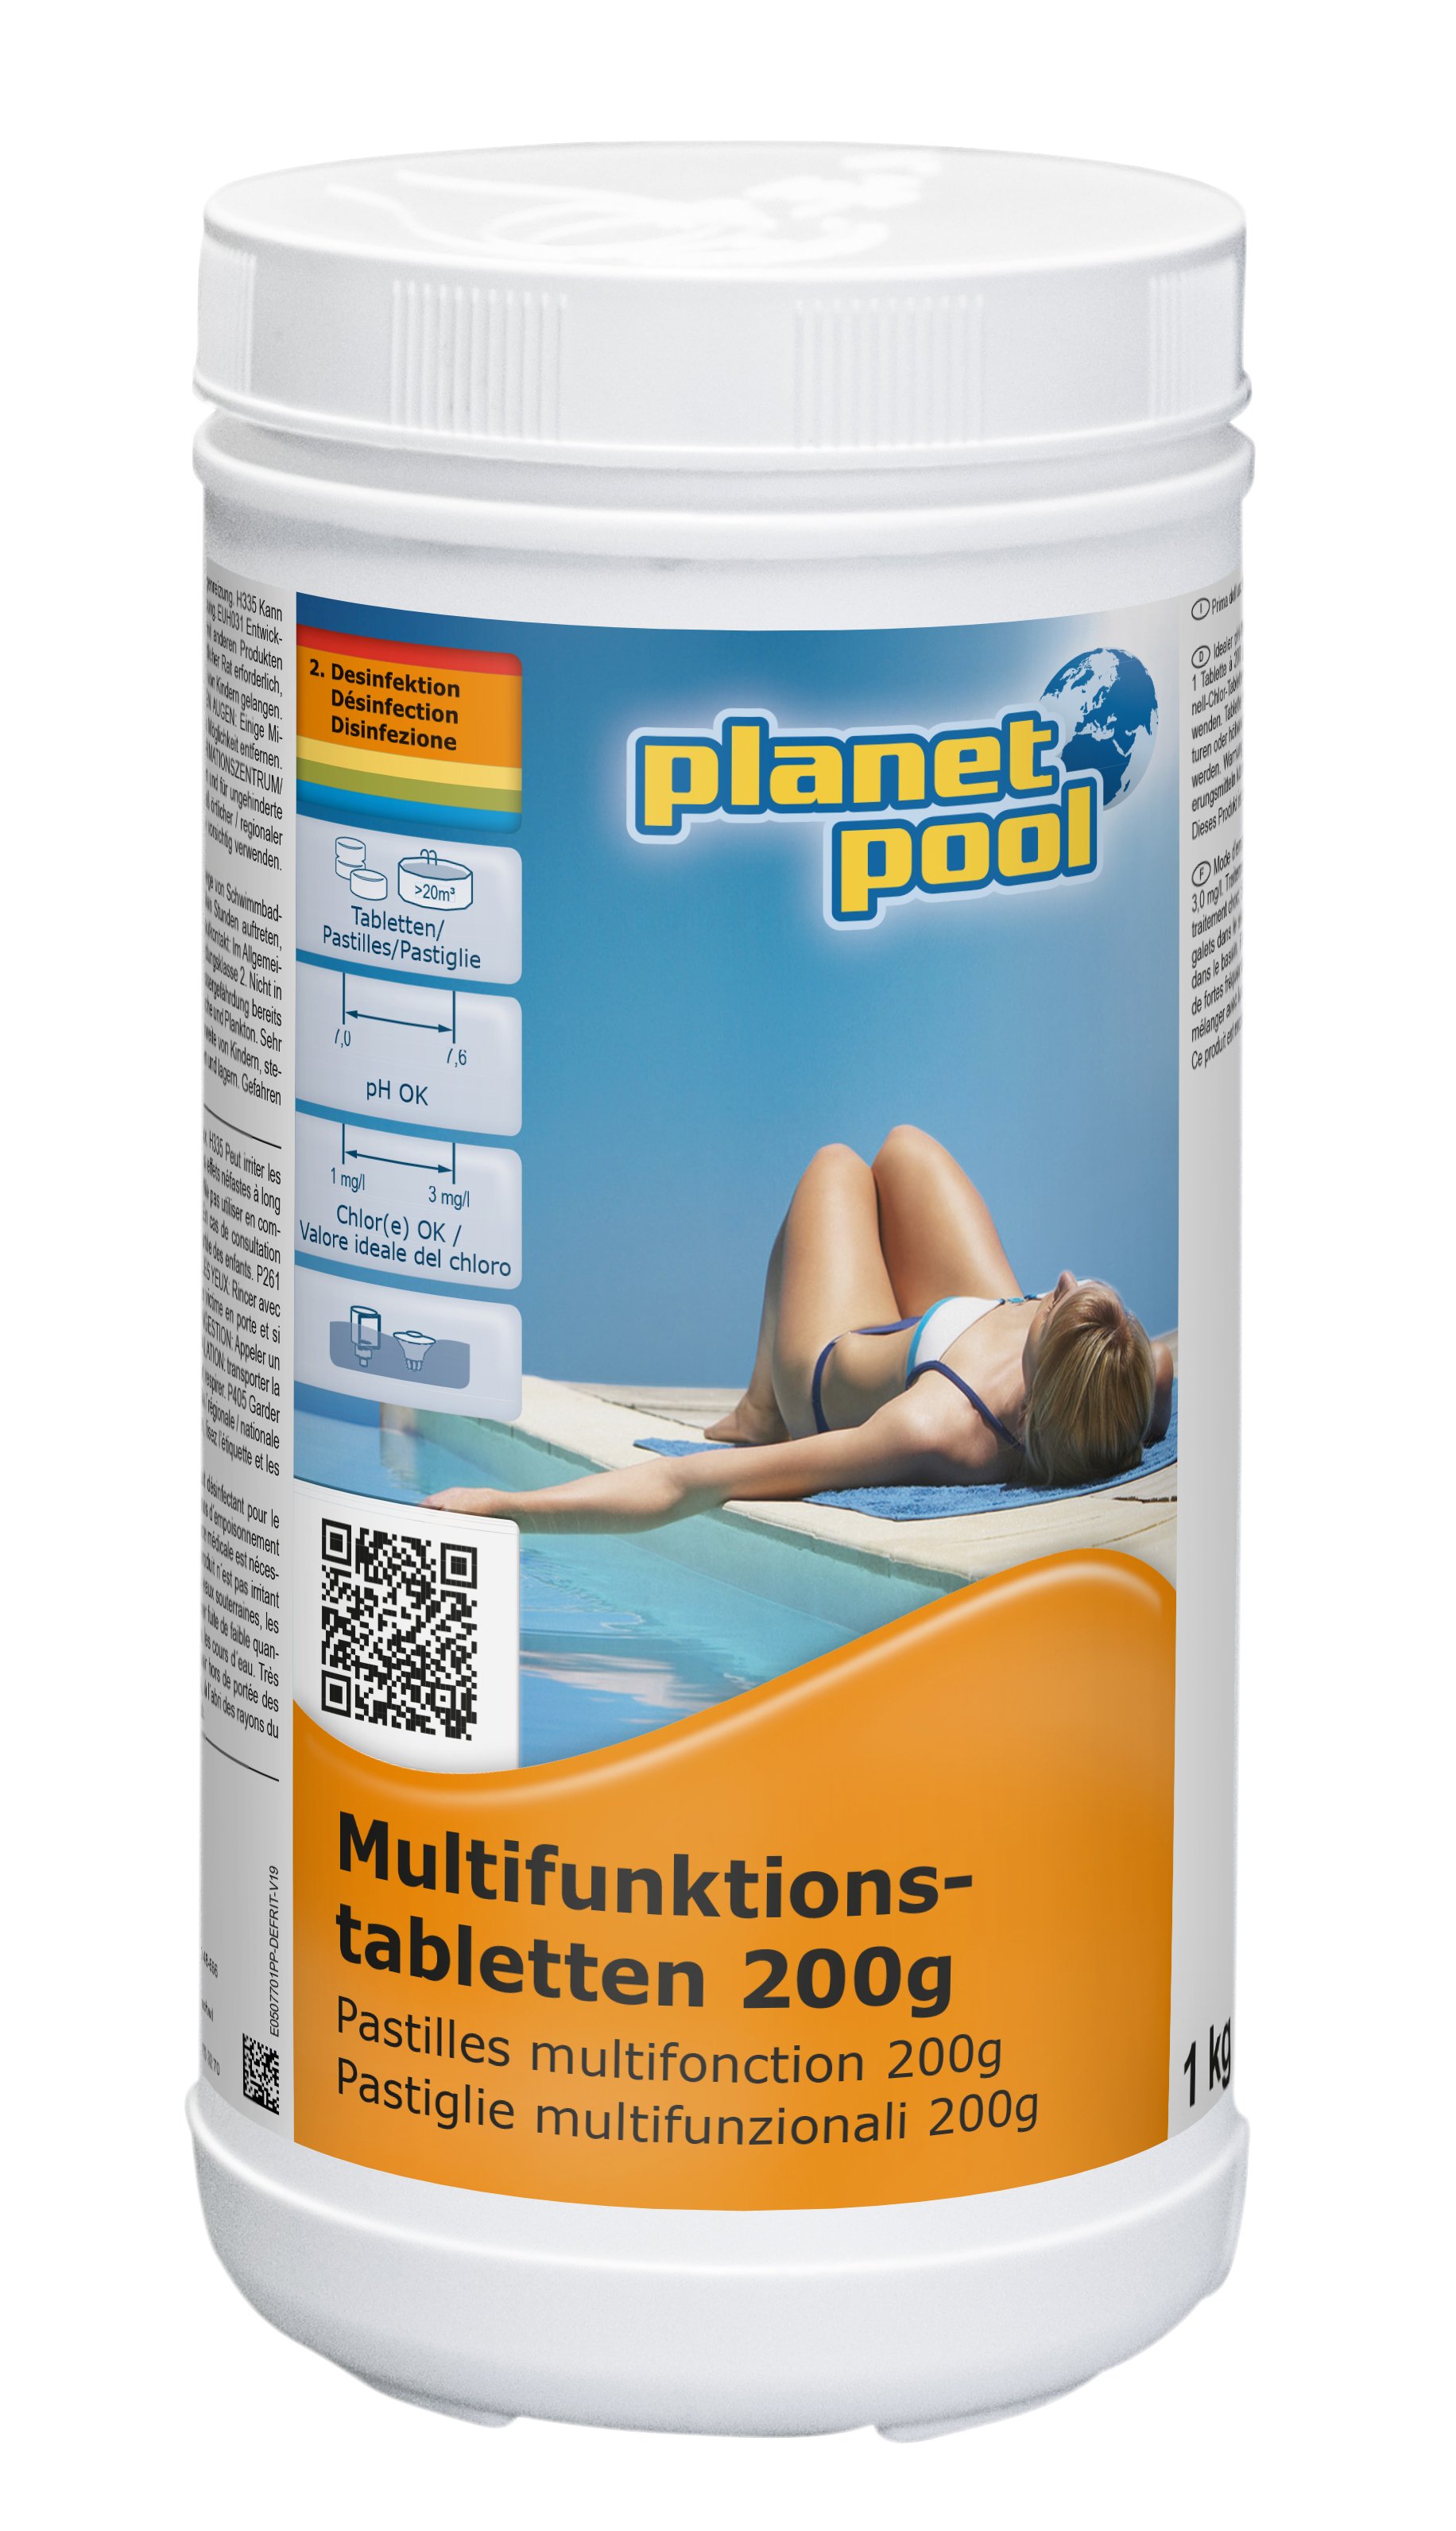 Planet Pool - Langzeit-Multifunktions-Tabletten 200 g, 1 kg